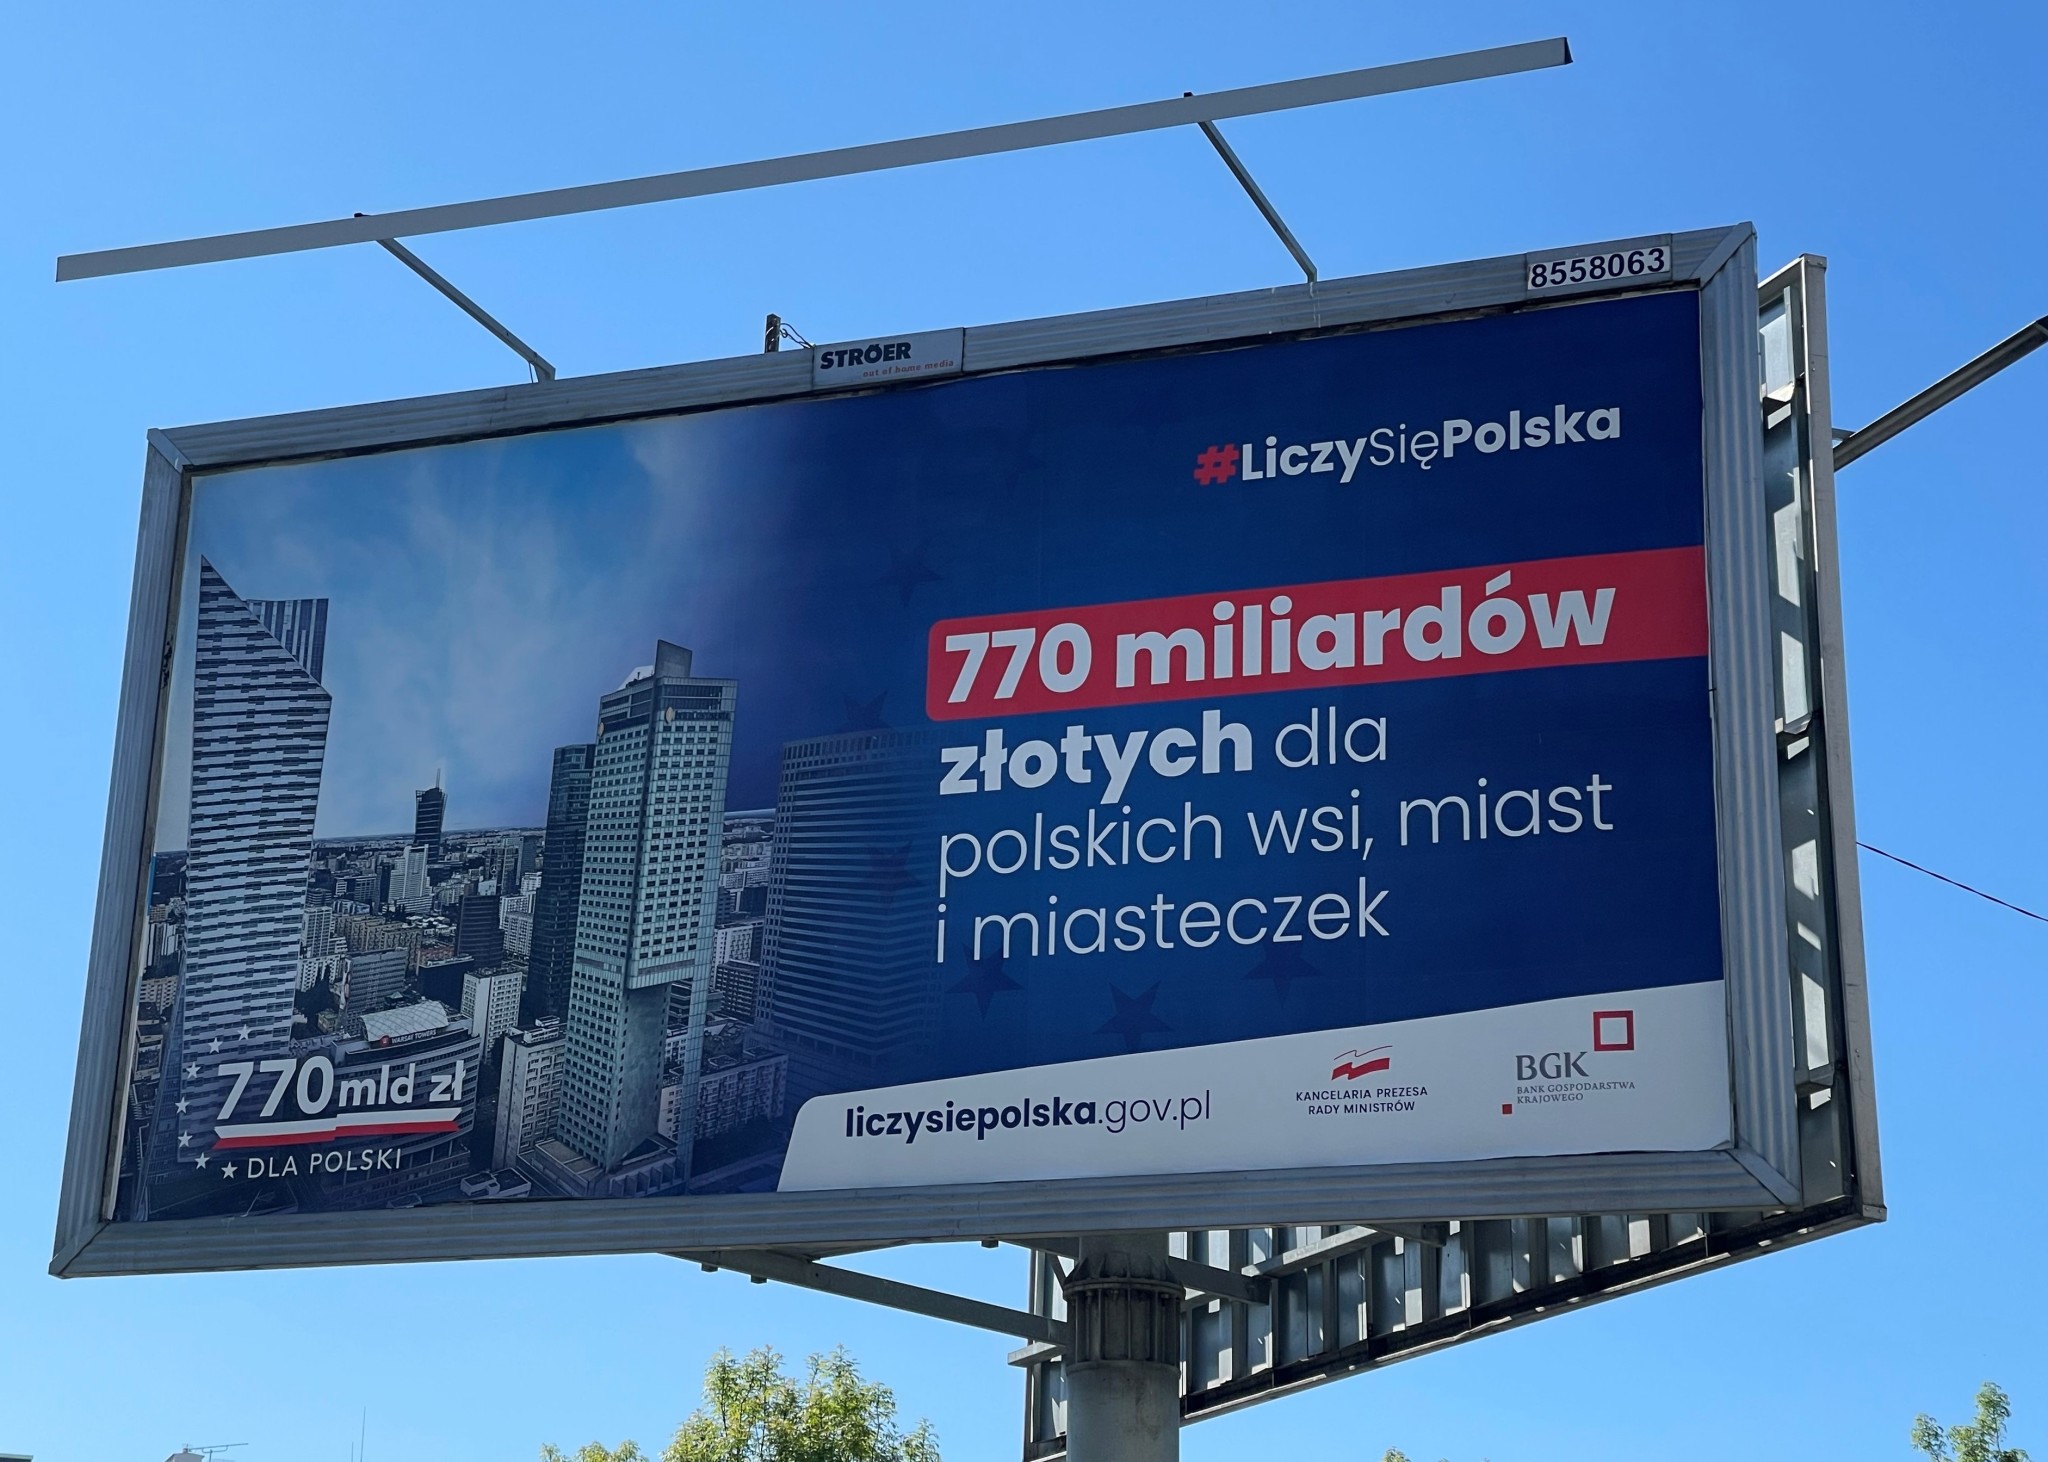 770 mld zł to kwota rozpropagowana w 2021 roku w wyniku rządowej kampanii #LiczysięPolska